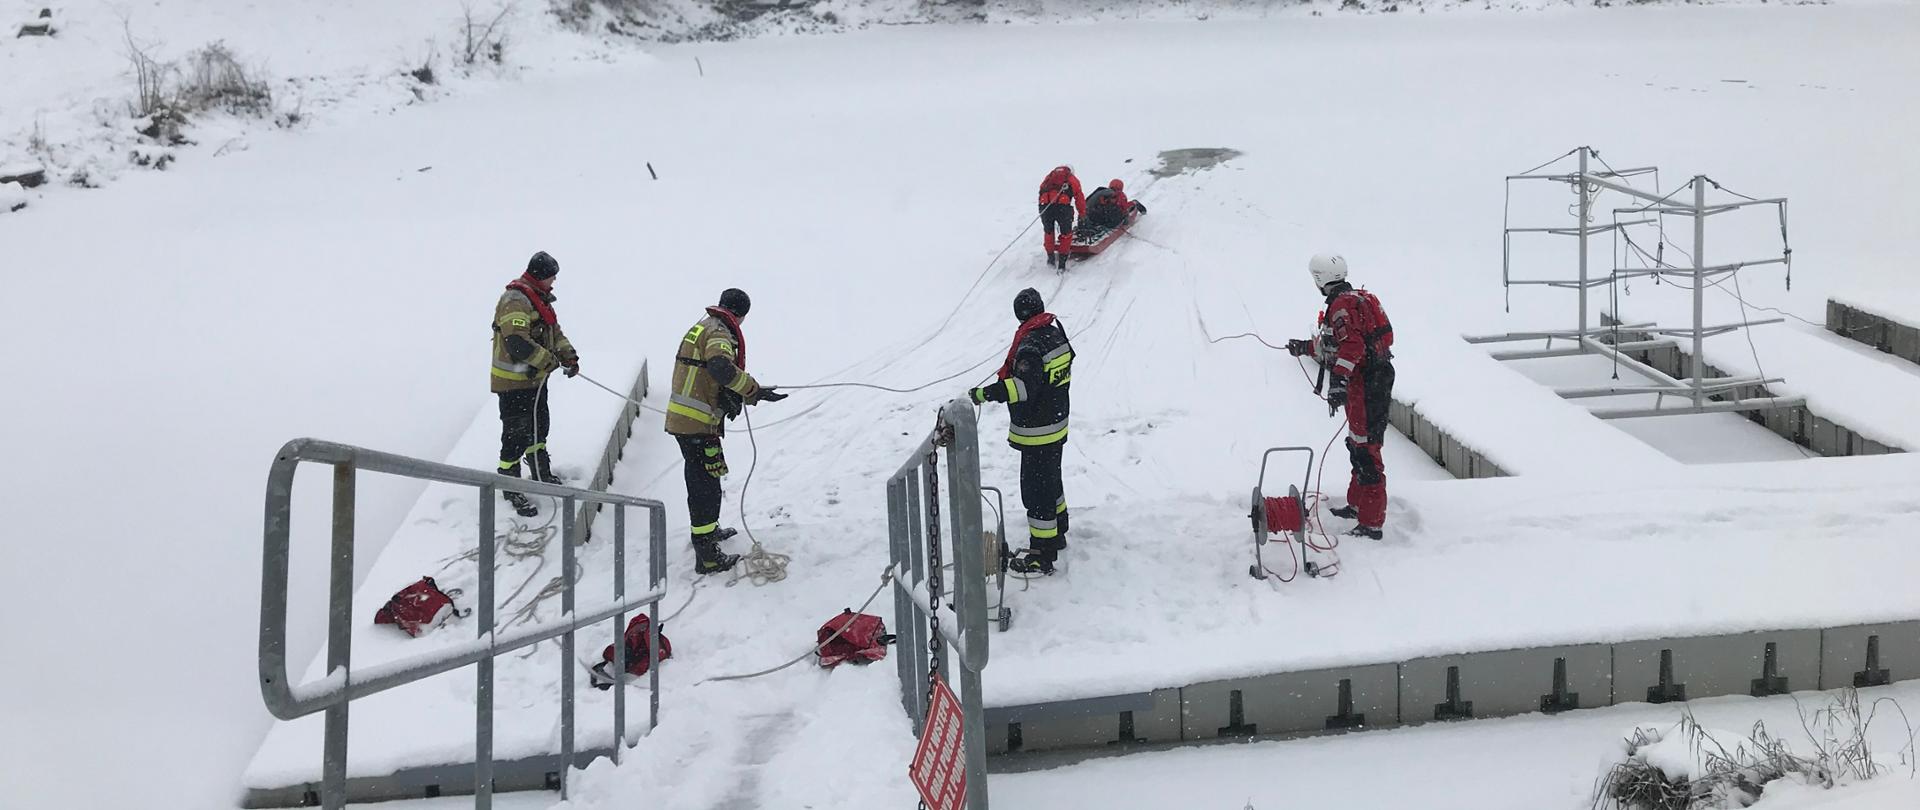 zdjęcie przedstawia zamarznięty zbiornik wodny i siedmiu strażaków. Dwóch strażaków przy pomocy sań lodowych wyciągają poszkodowanego strażaka z wody. Czterech strażaków stoi na brzegu i asekuruje przy pomocy lin strażaków, którzy są na tafli lodu i wyciągają poszkodowanego. 